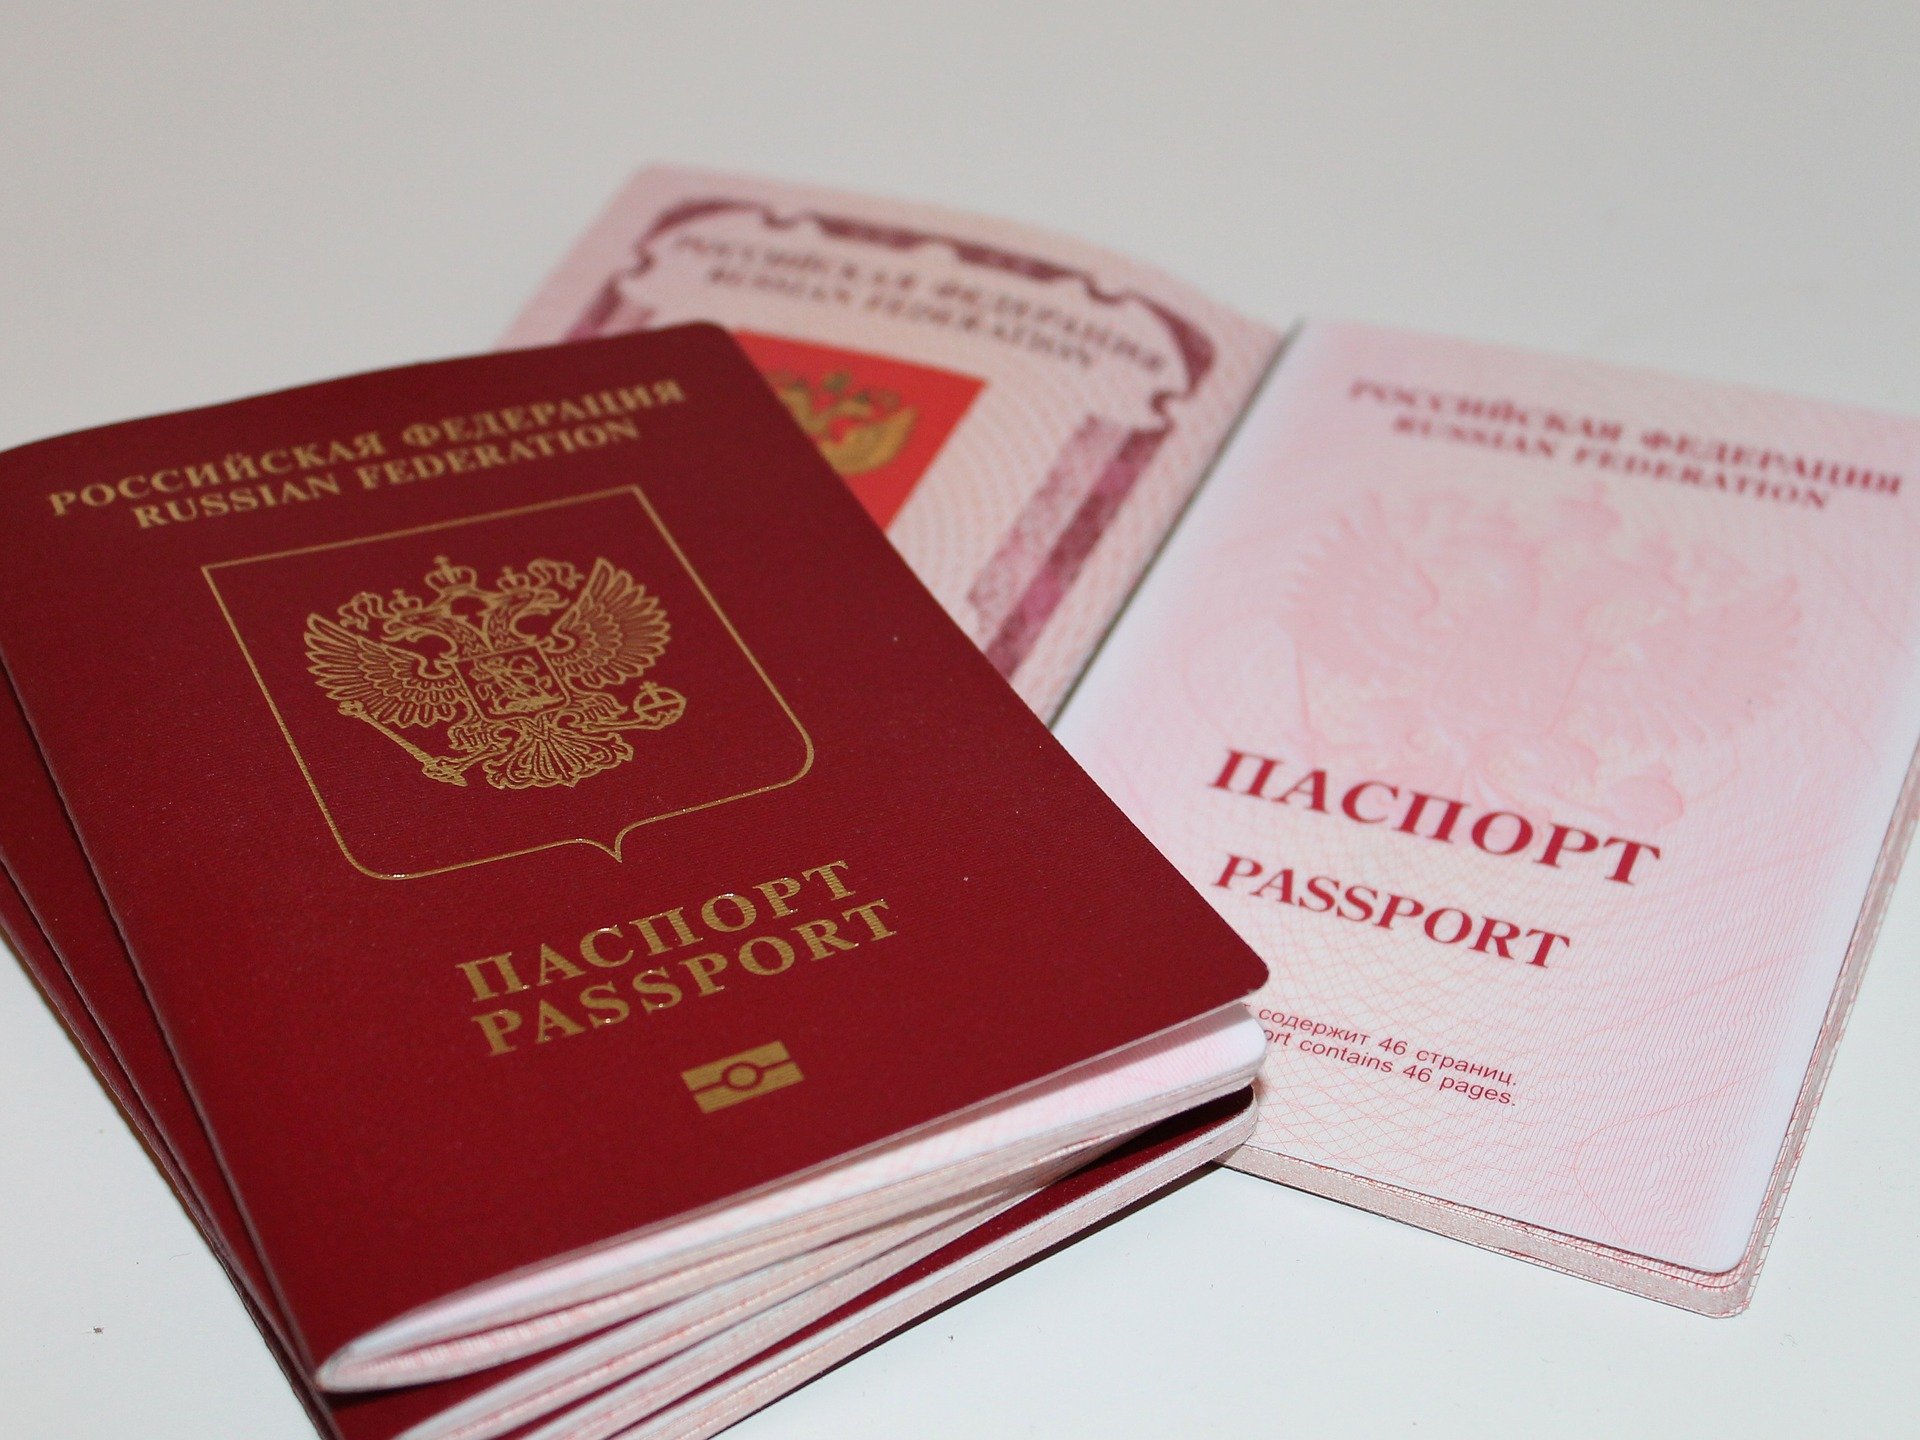 

Жители Удмуртии могут заменить просроченные паспорта до 31 декабря

